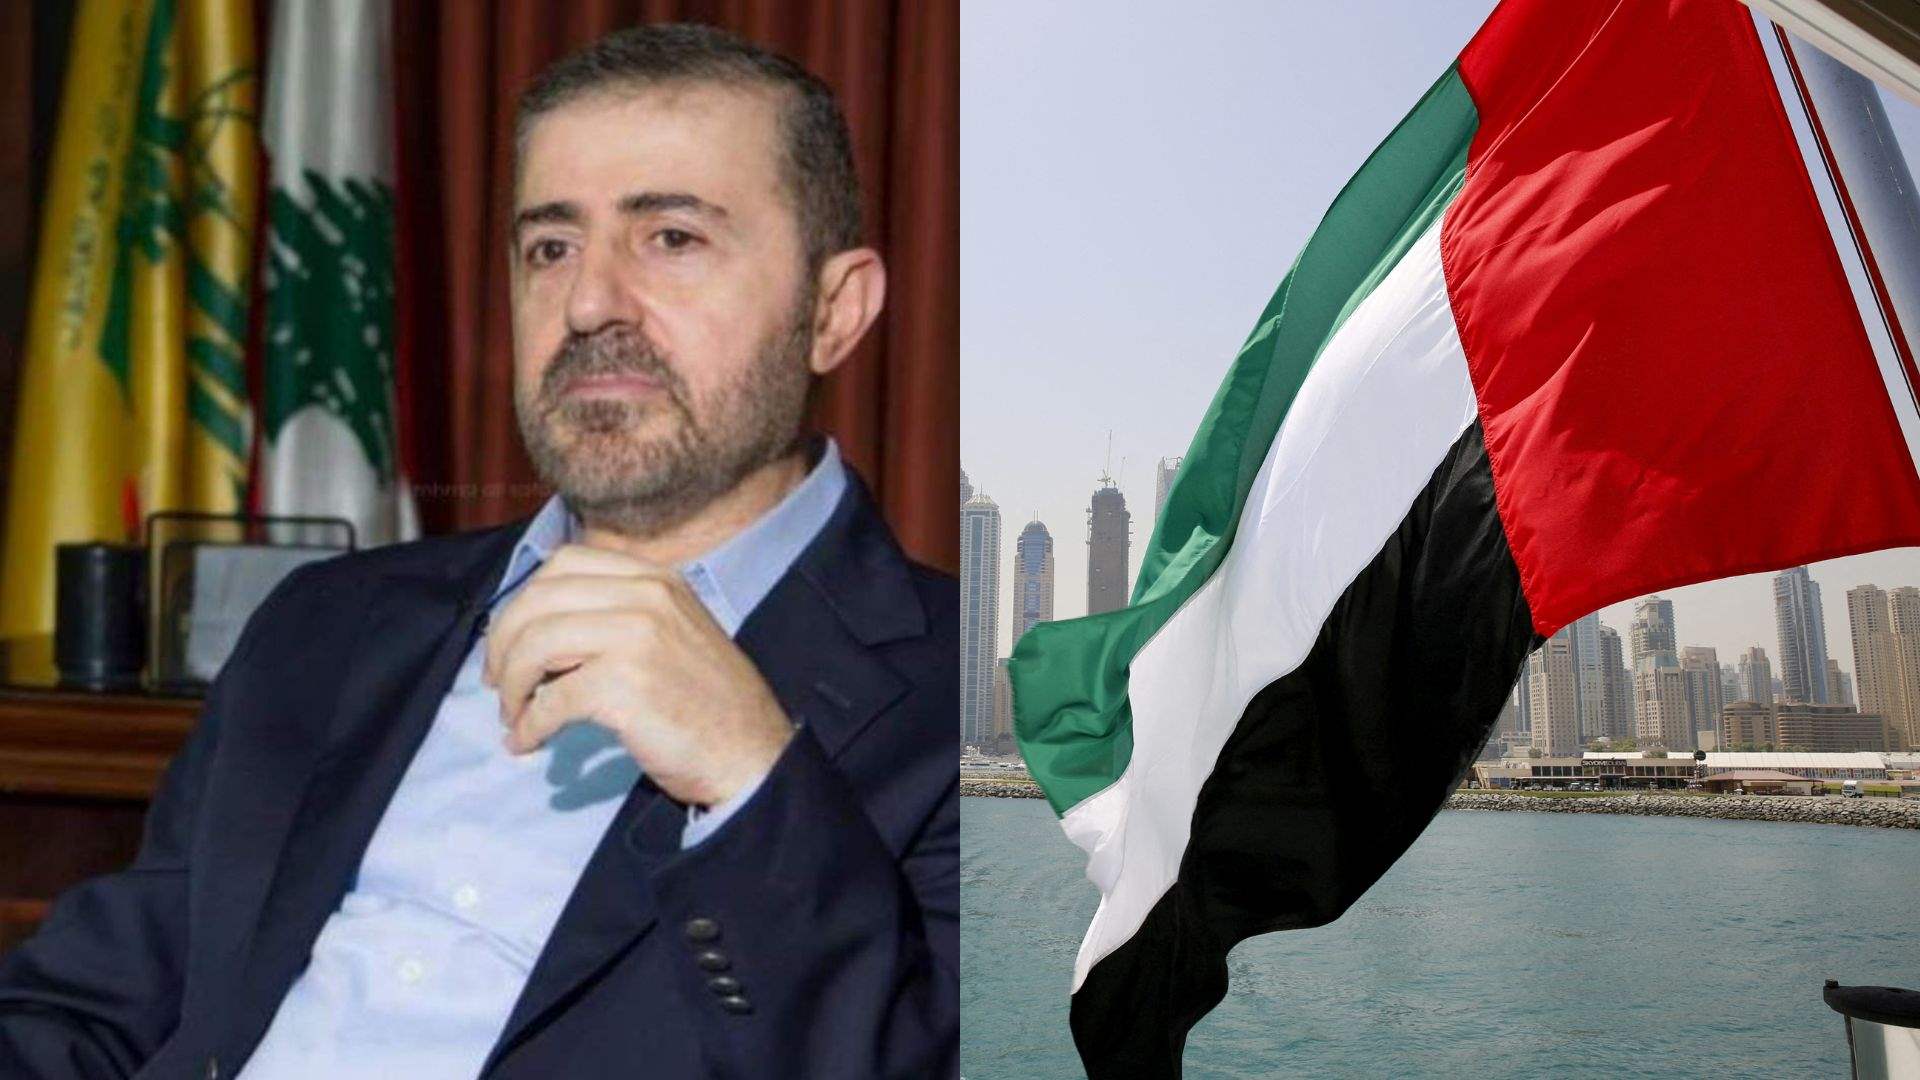 Detainee discussions: Wafiq Safa&#39;s sole purpose in the UAE visit